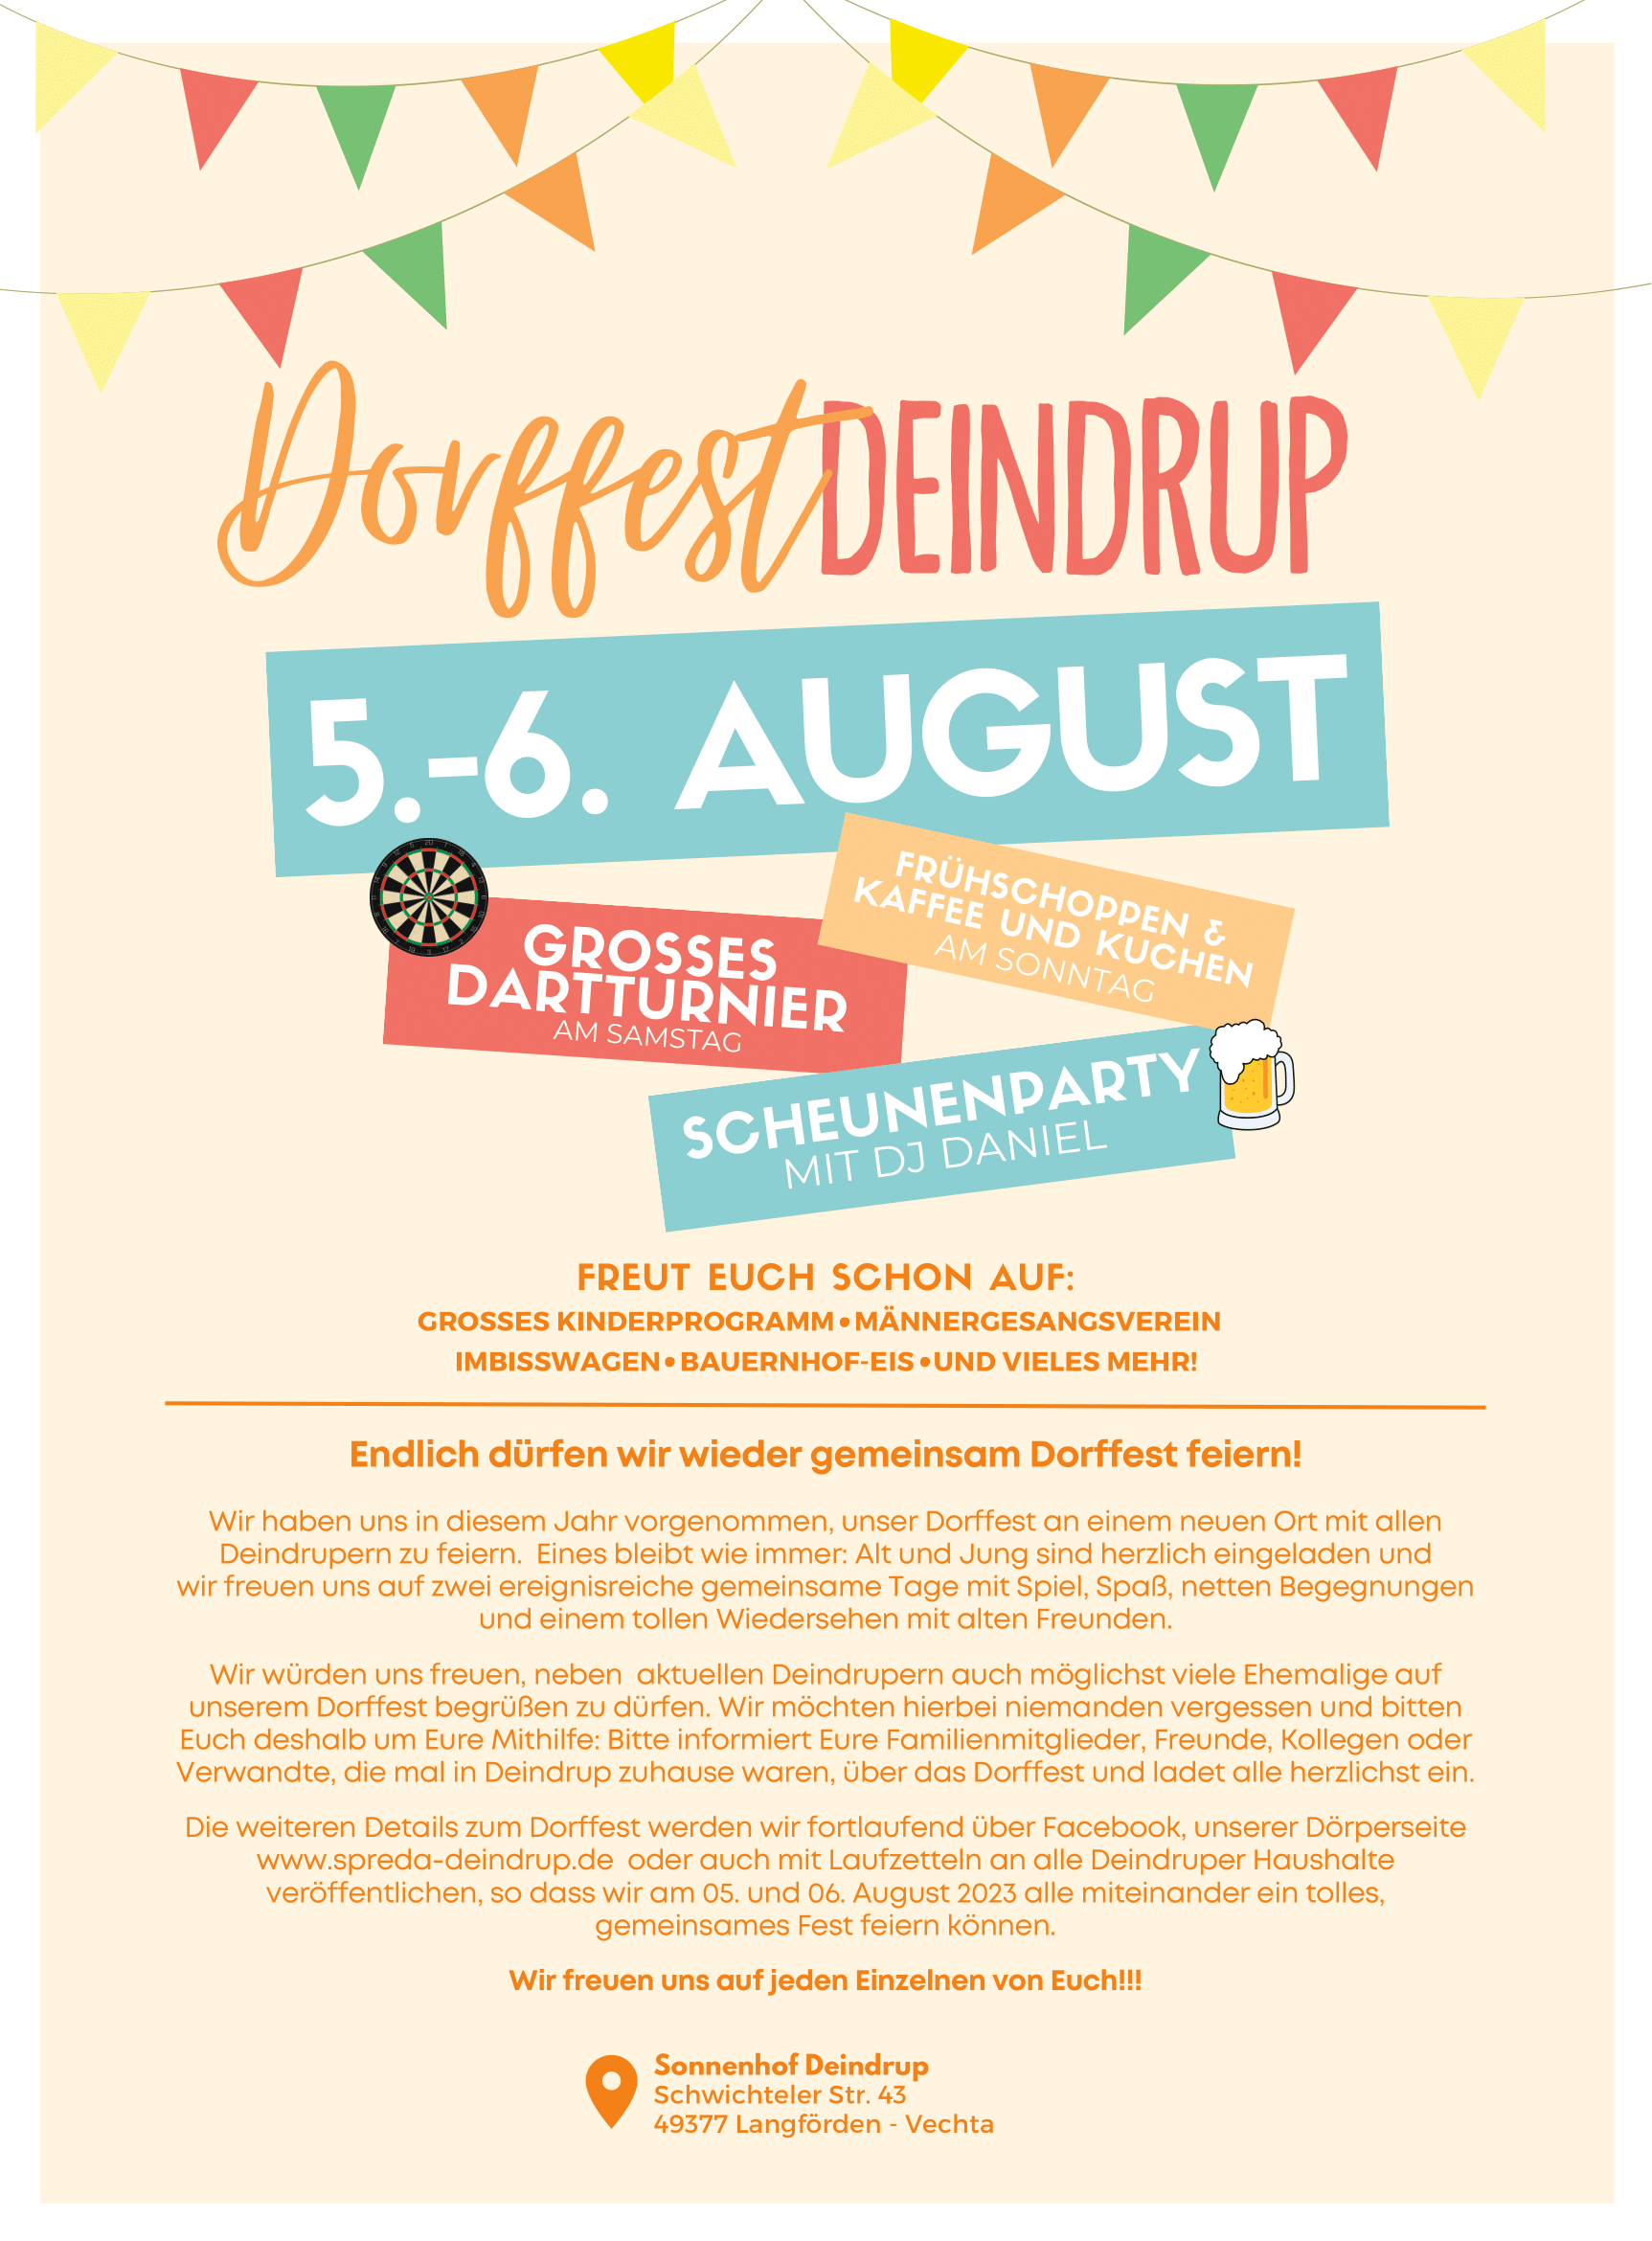 Dorffest Deindrup